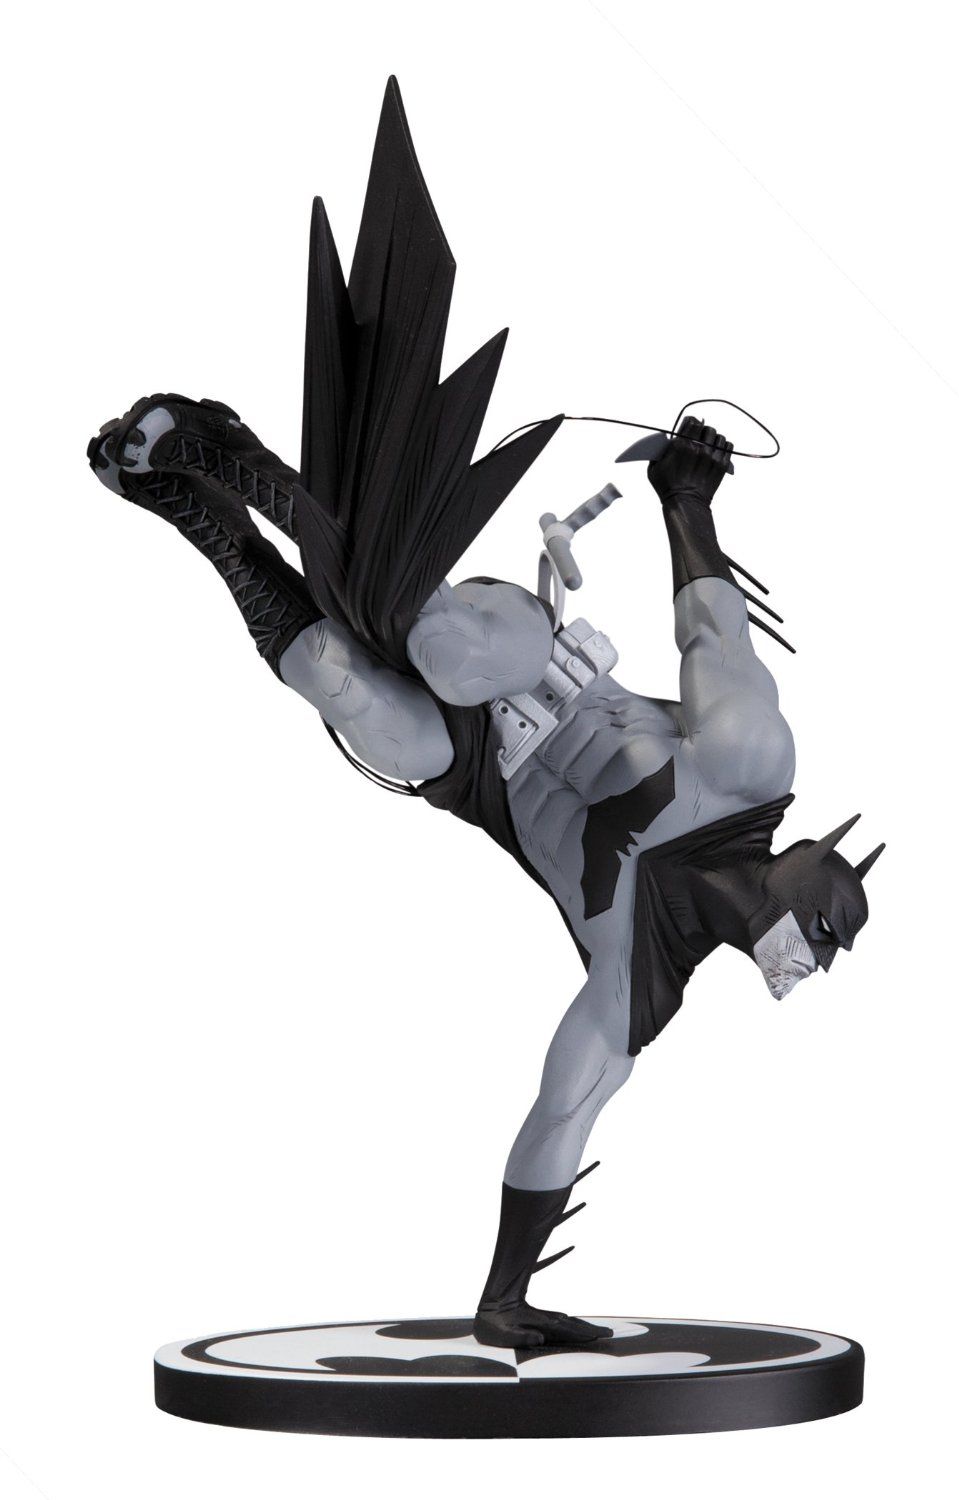 Black & White Batman Statue by Sean Murphy